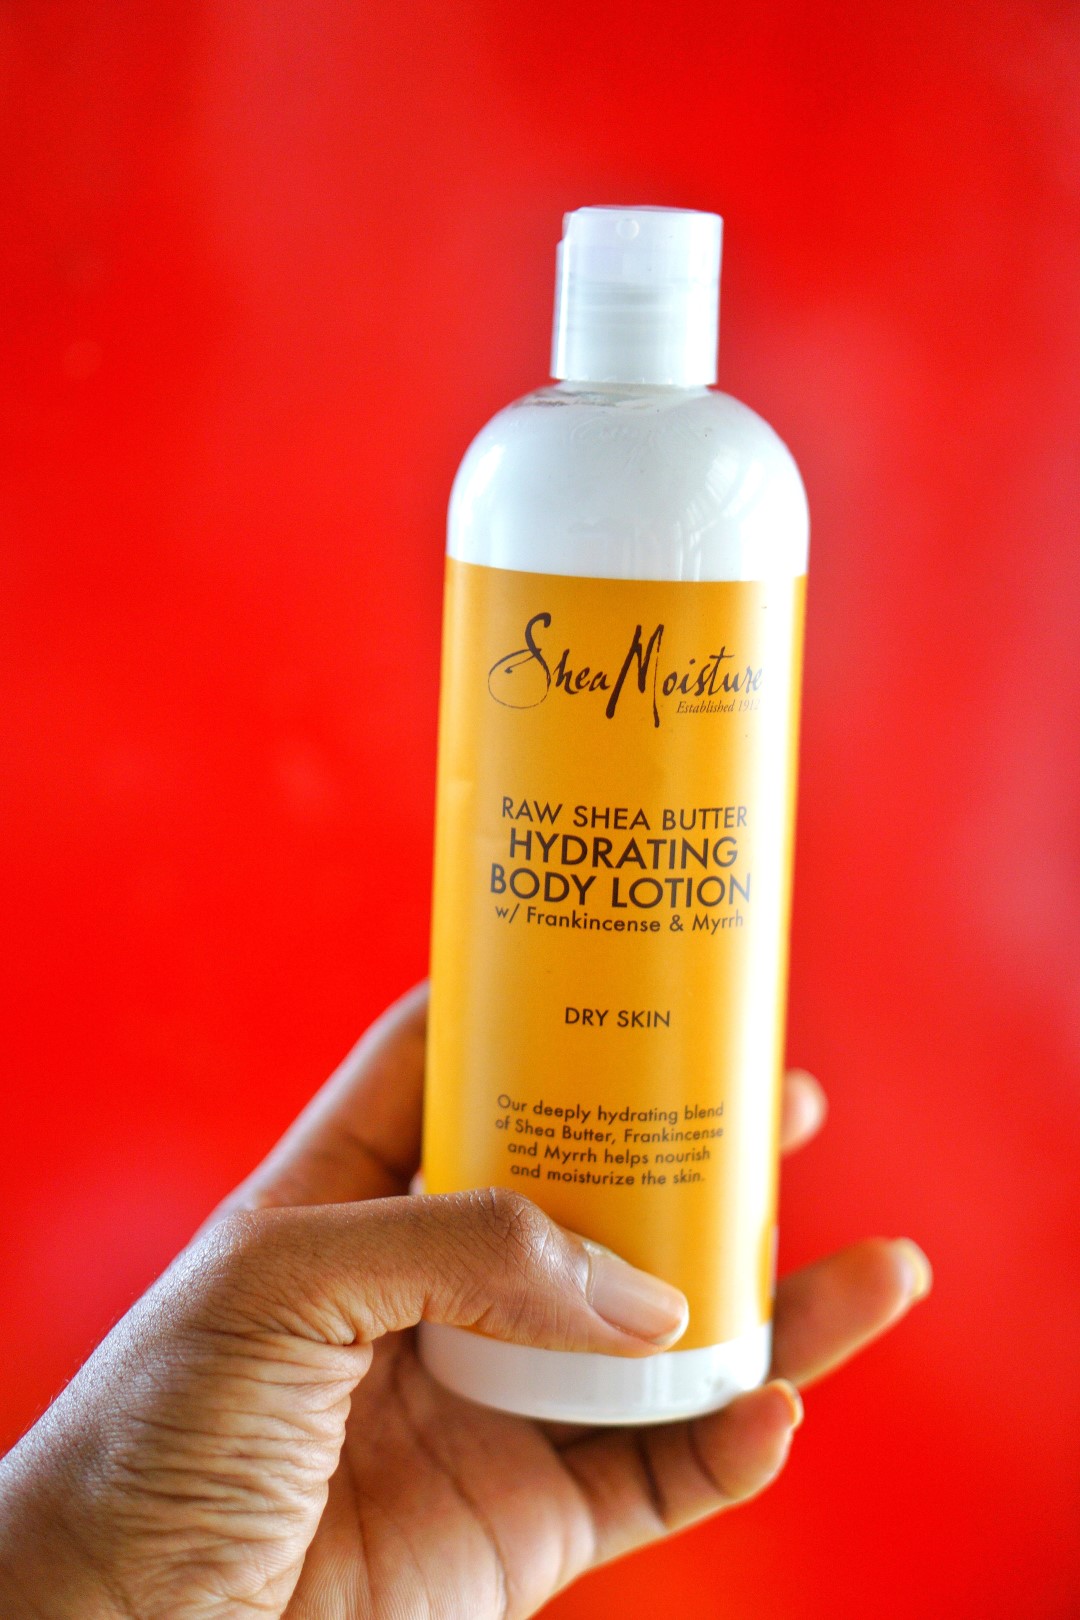 Shea moisture raw shea butter hydrating body lotion